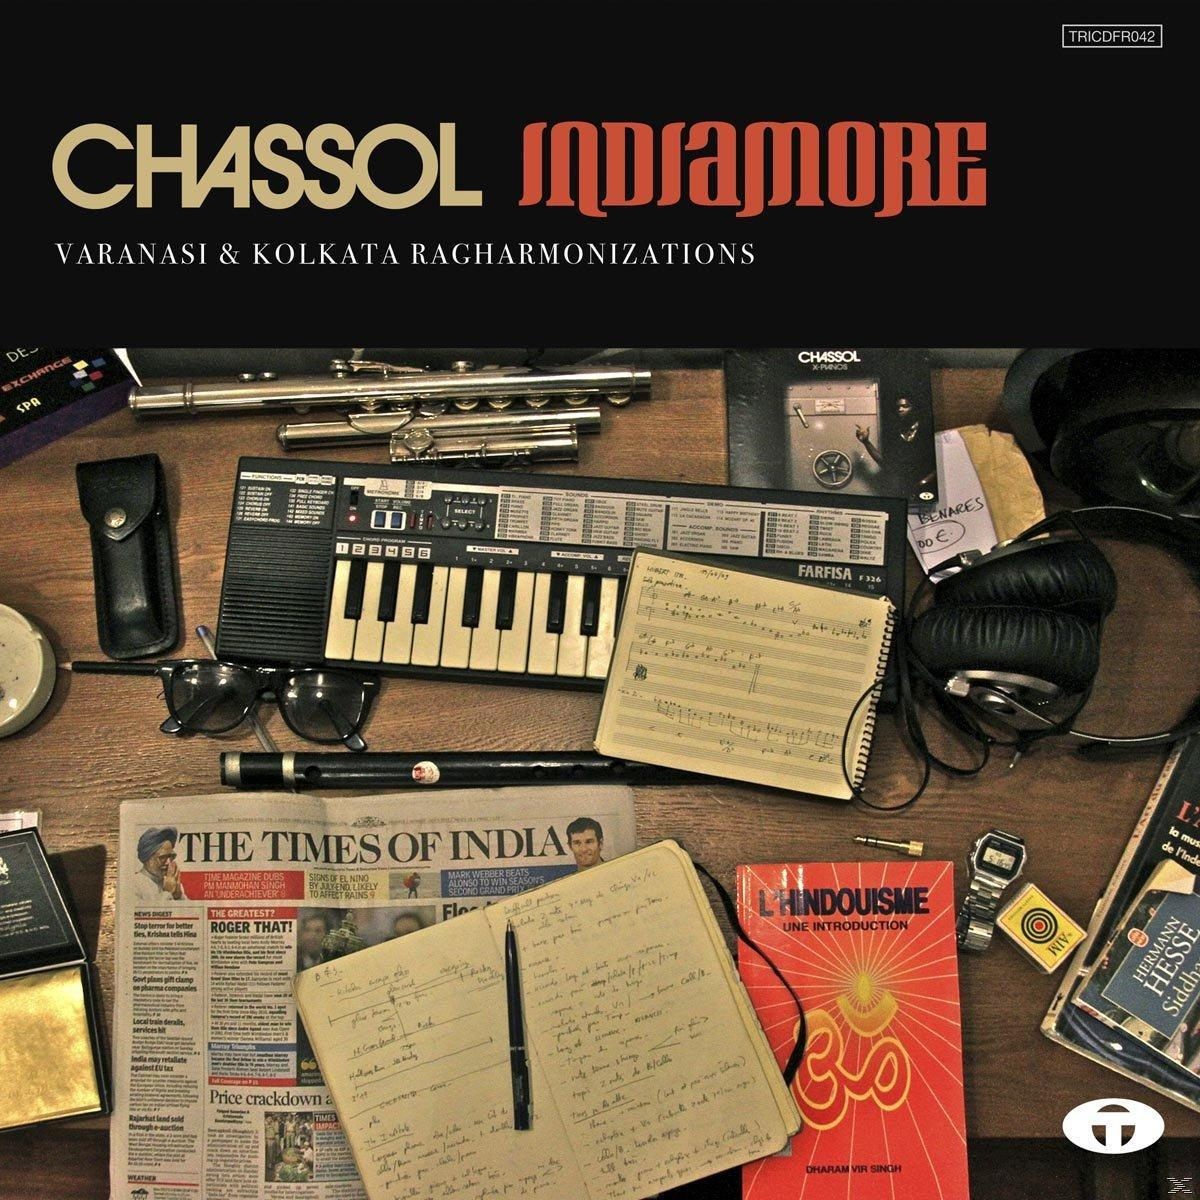 Chassol - Indiamore - (Vinyl)